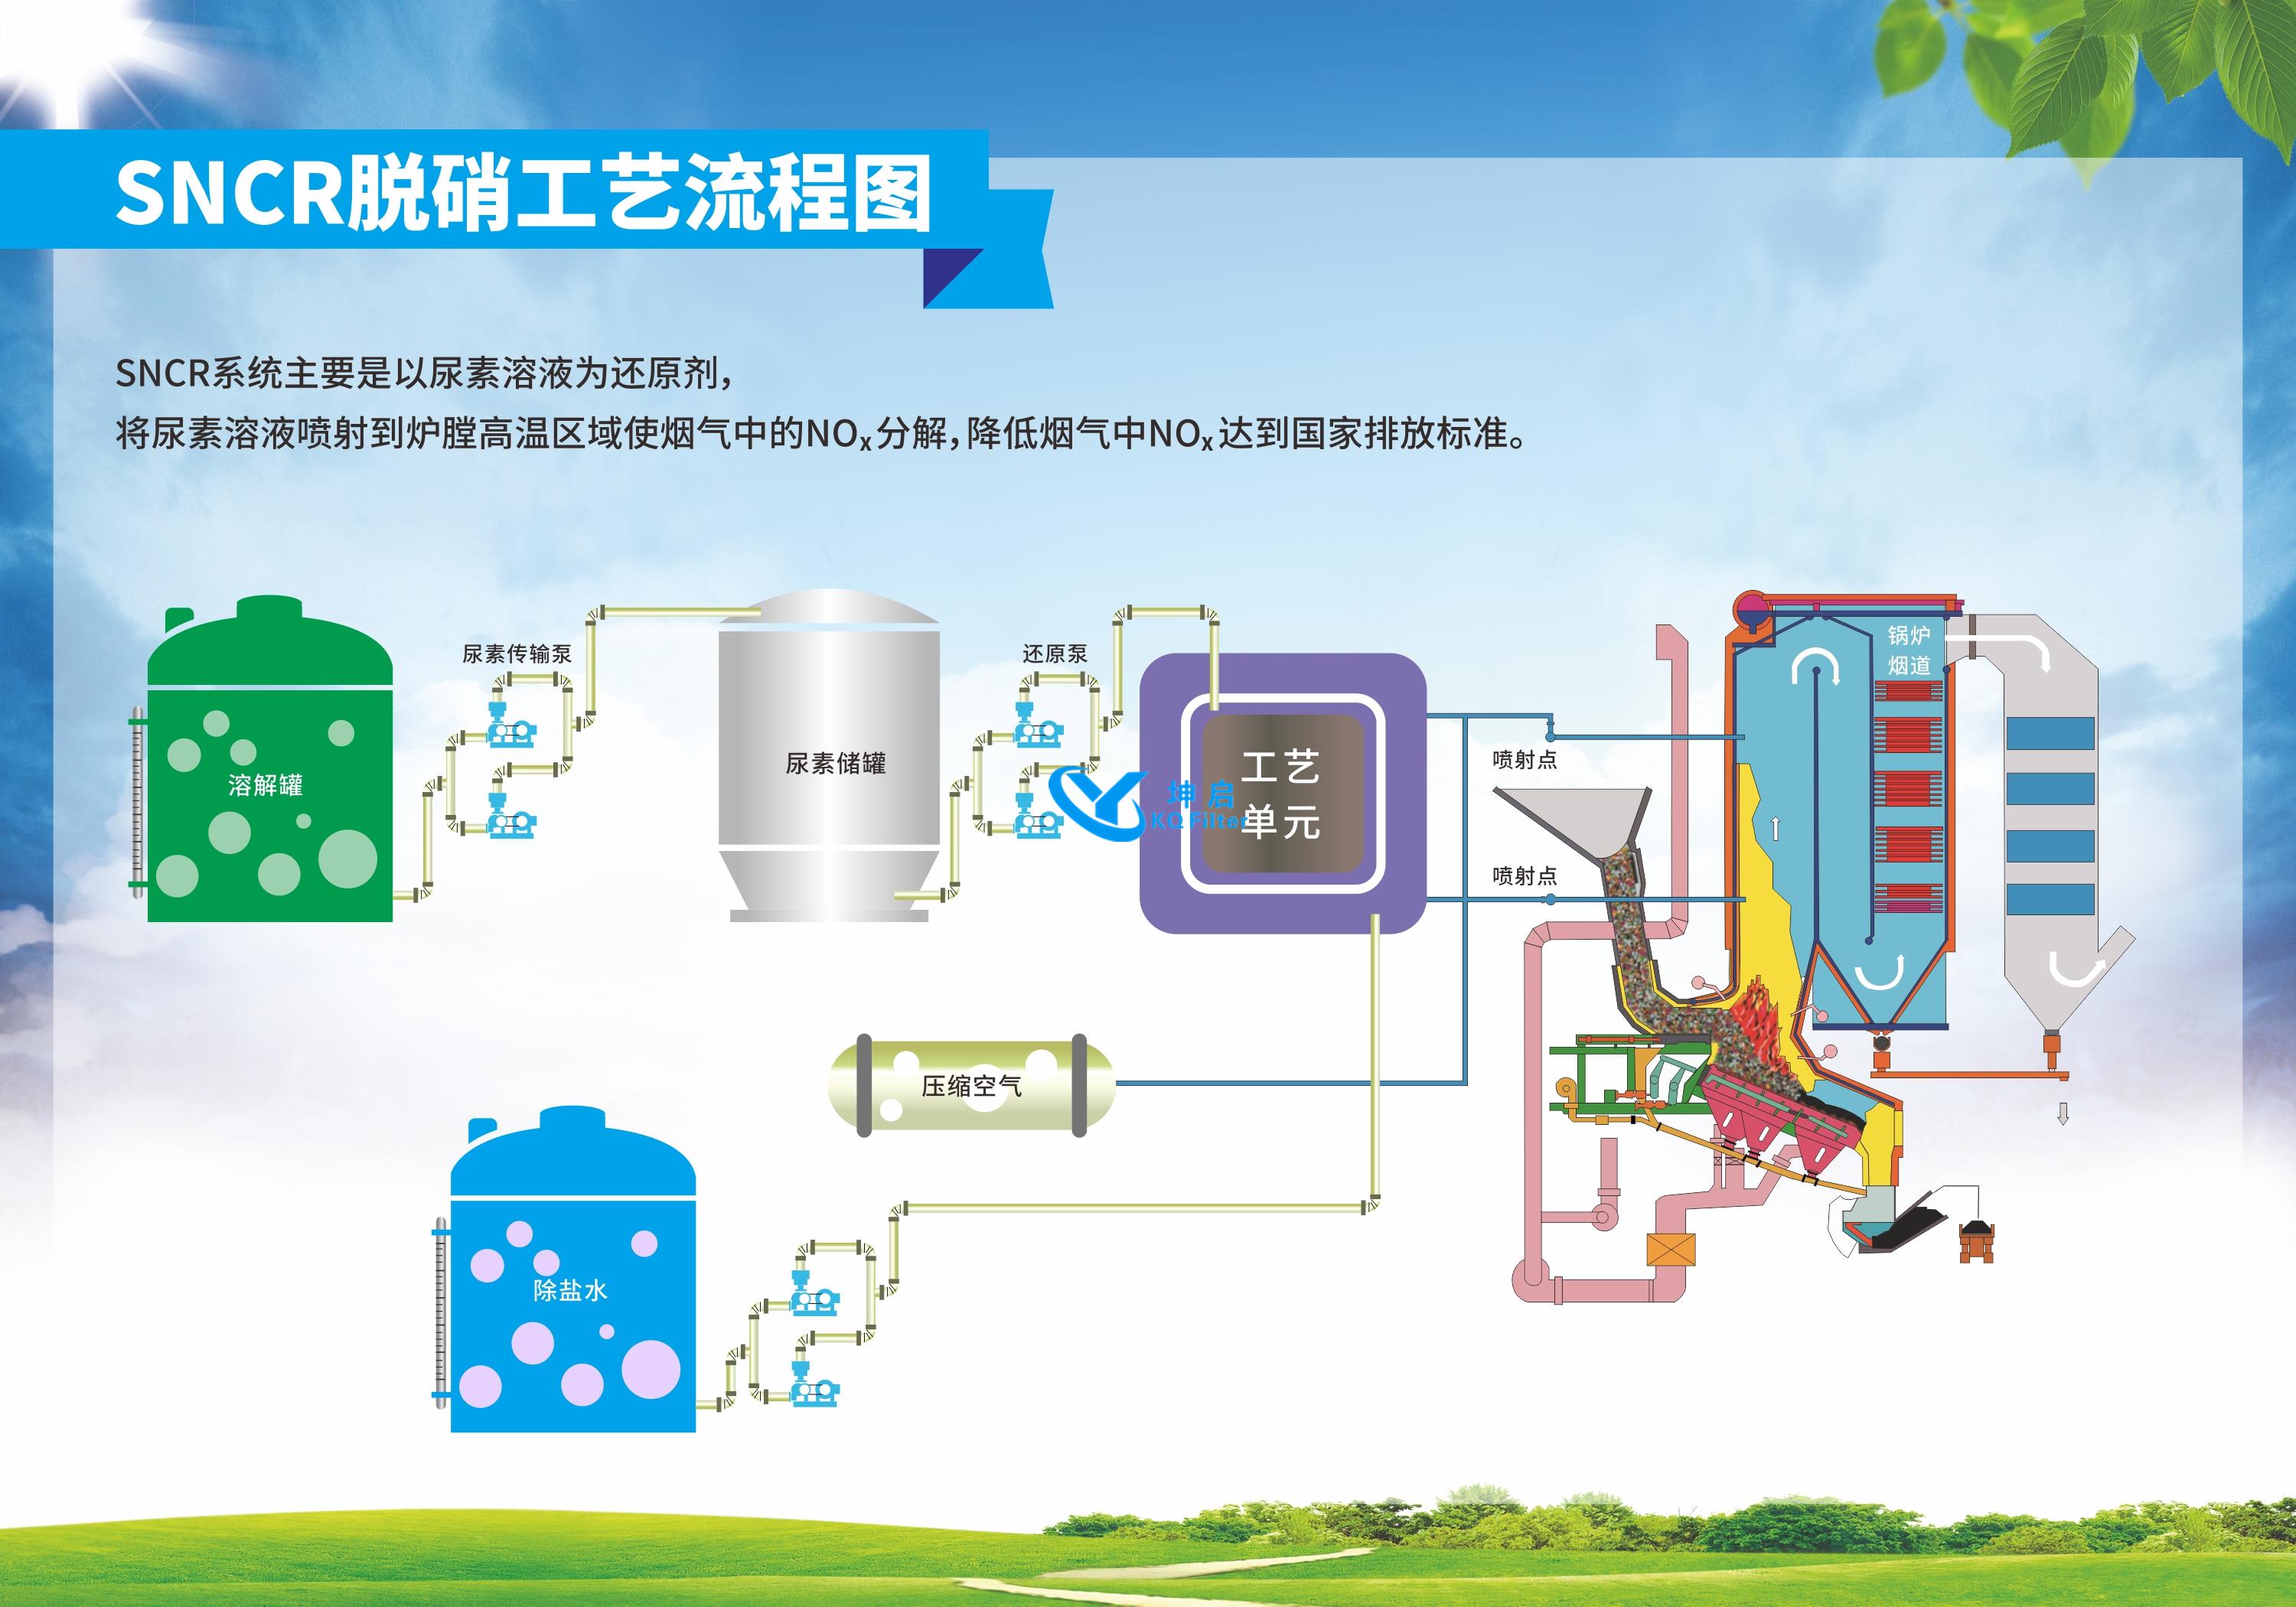 芜湖垃圾焚烧电厂2×650t/d锅炉烟气净化系统装置EPC工程